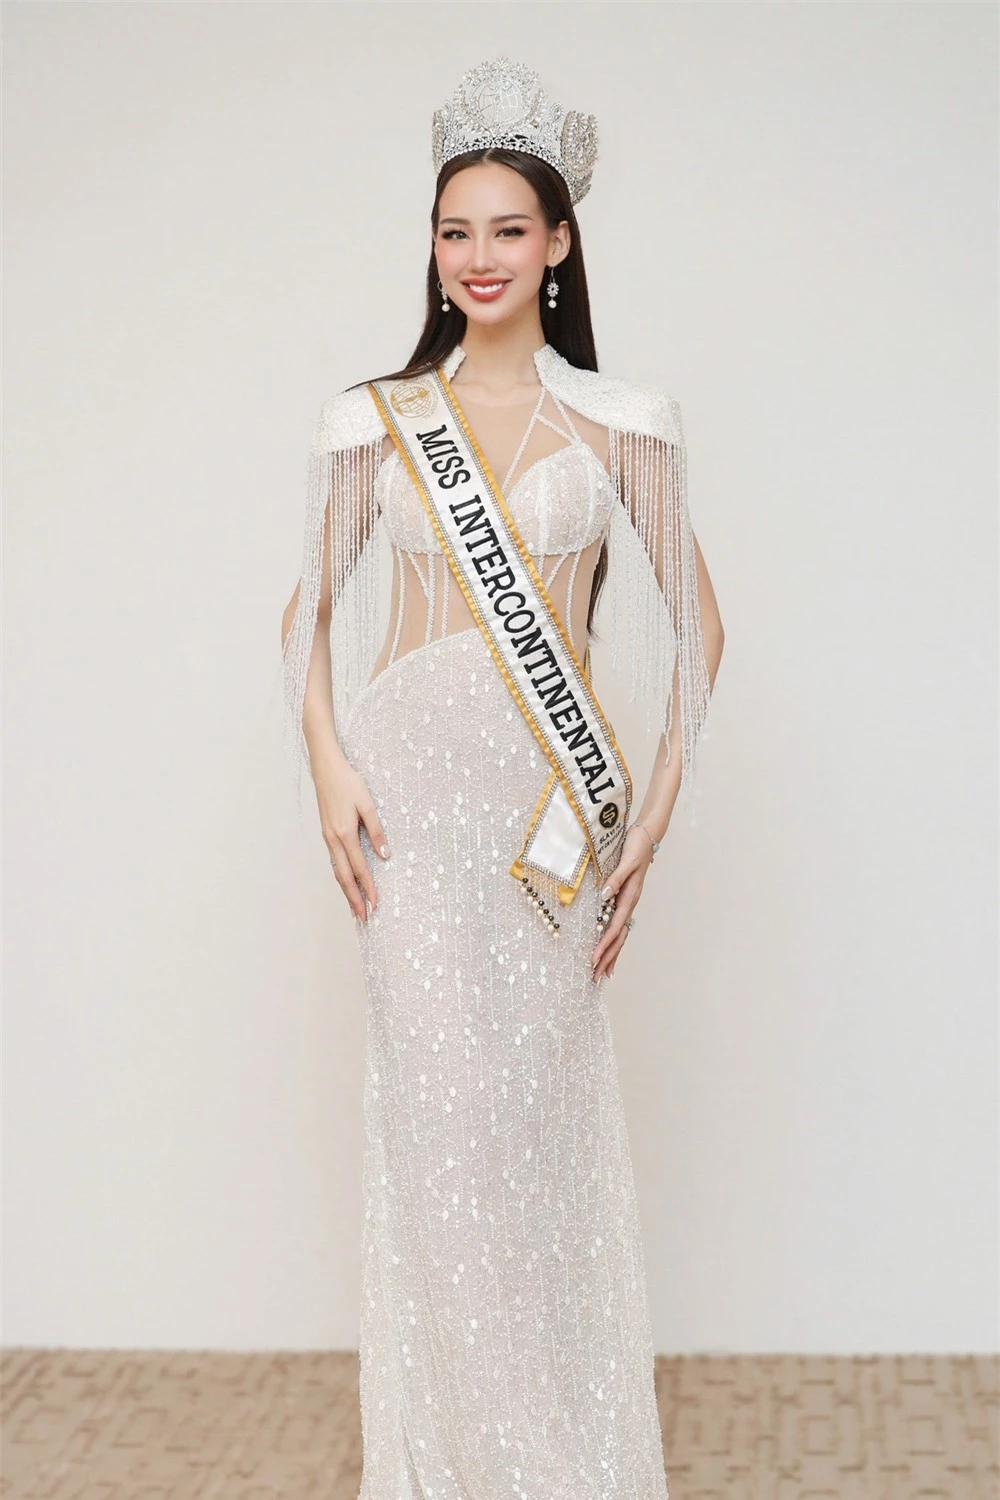 Á hậu Ngọc Hằng khoe dáng với bikini ở Hoa hậu Liên lục địa - Ảnh 1.